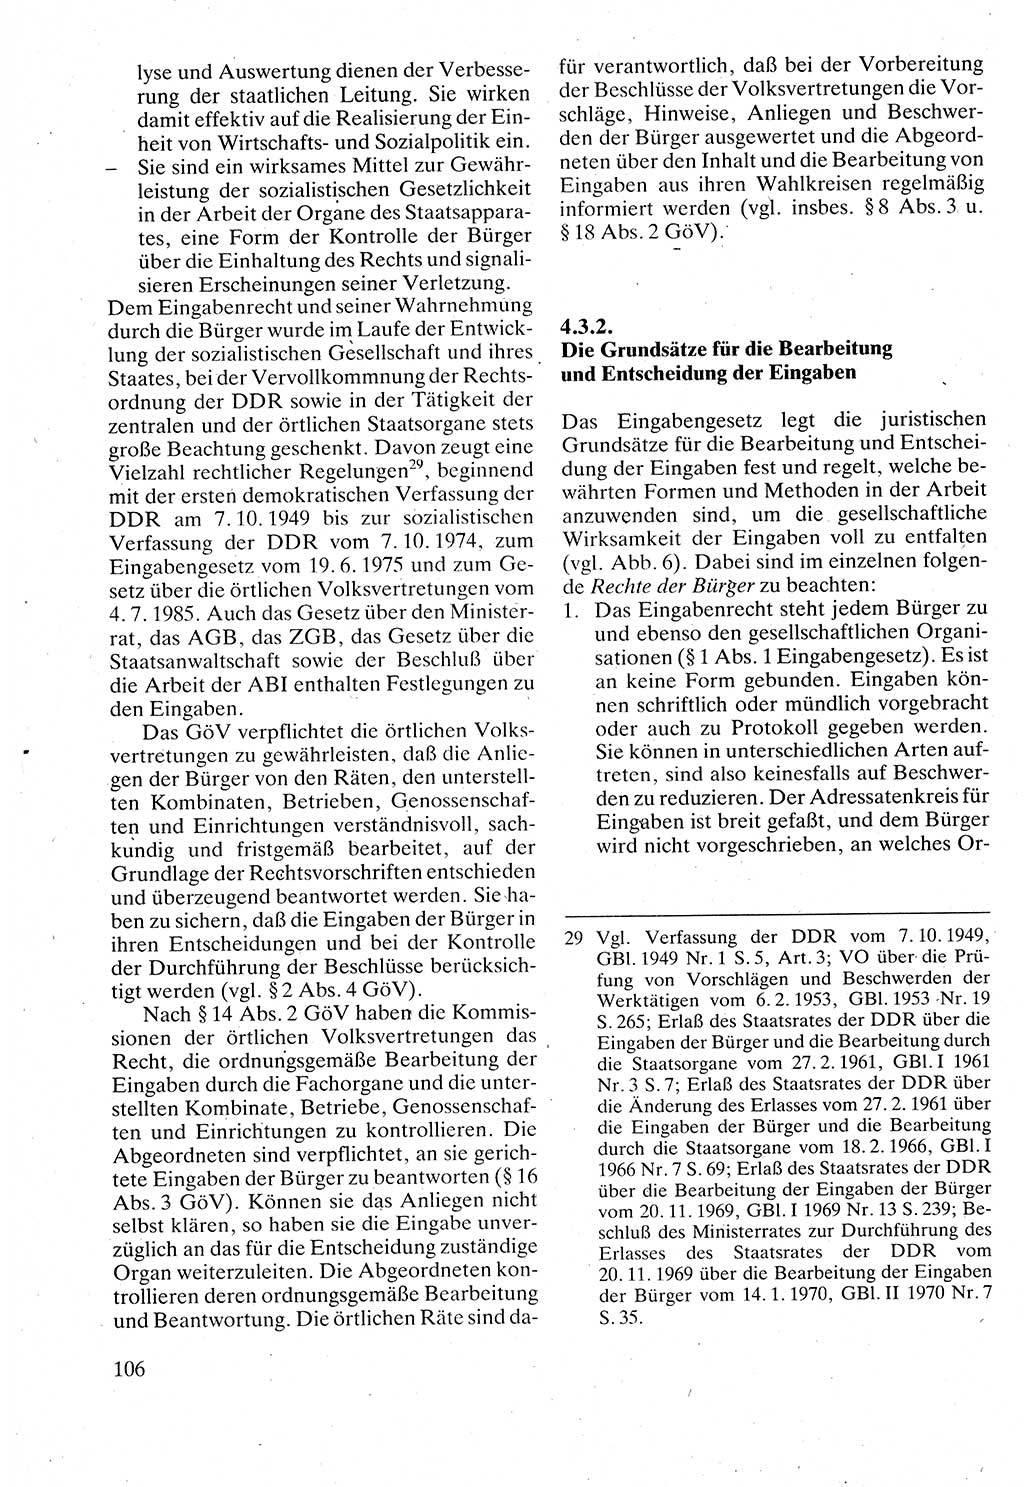 Verwaltungsrecht [Deutsche Demokratische Republik (DDR)], Lehrbuch 1988, Seite 106 (Verw.-R. DDR Lb. 1988, S. 106)